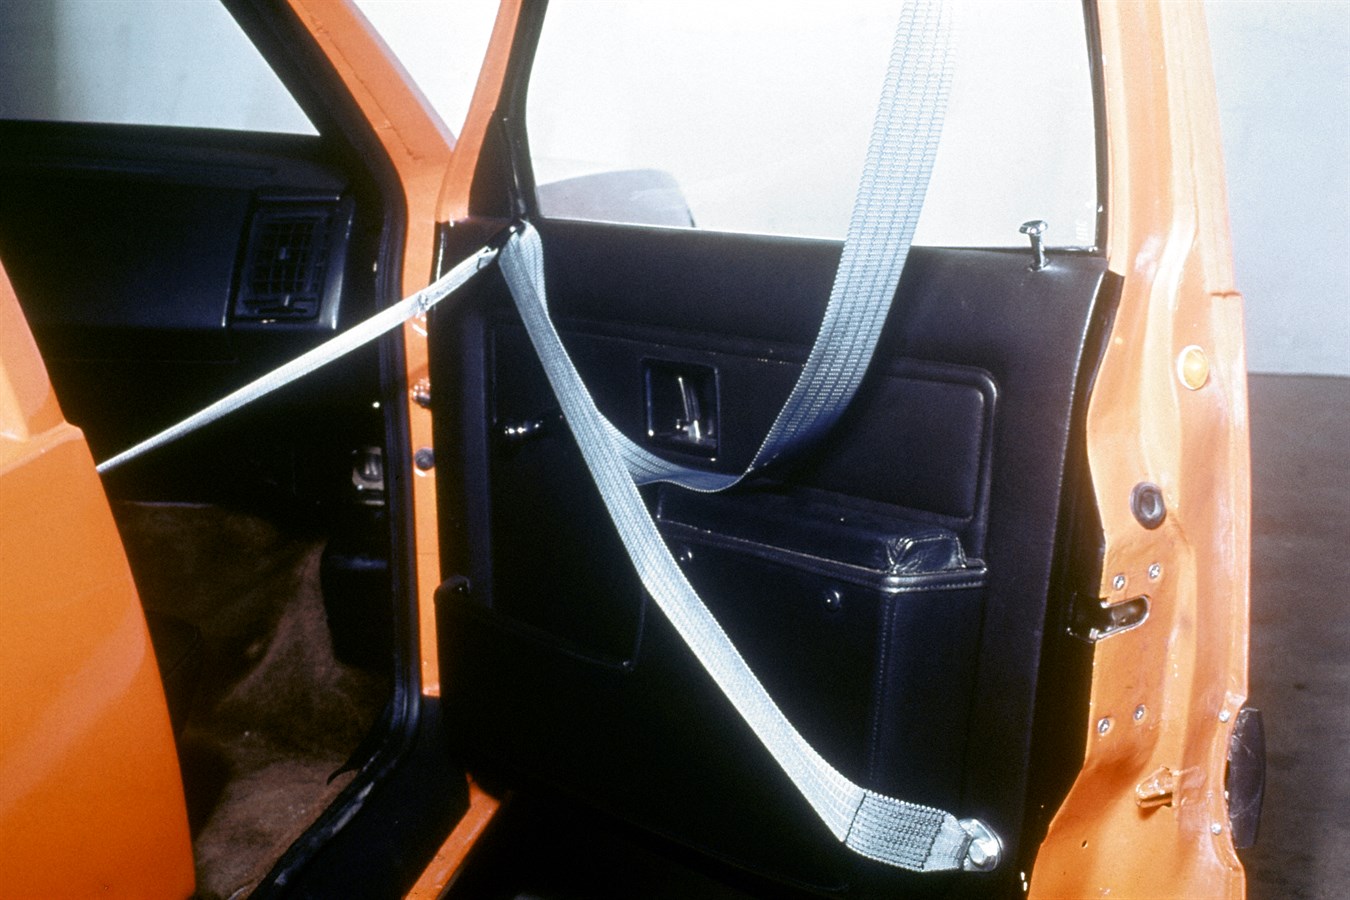 Vettura di sicurezza sperimentale Volvo (VESC, Volvo Experimental Safety Car), 1972; vennero realizzate varie vetture VESC, per collaudare una serie di nuove funzioni di sicurezza e verificare la reazione del pubblico agli aspetti della linea della Volvo 240, lanciata due anni più tardi. Il modello VESC disponeva di zone a deformazione controllata e di una protezione contro il ribaltamento.